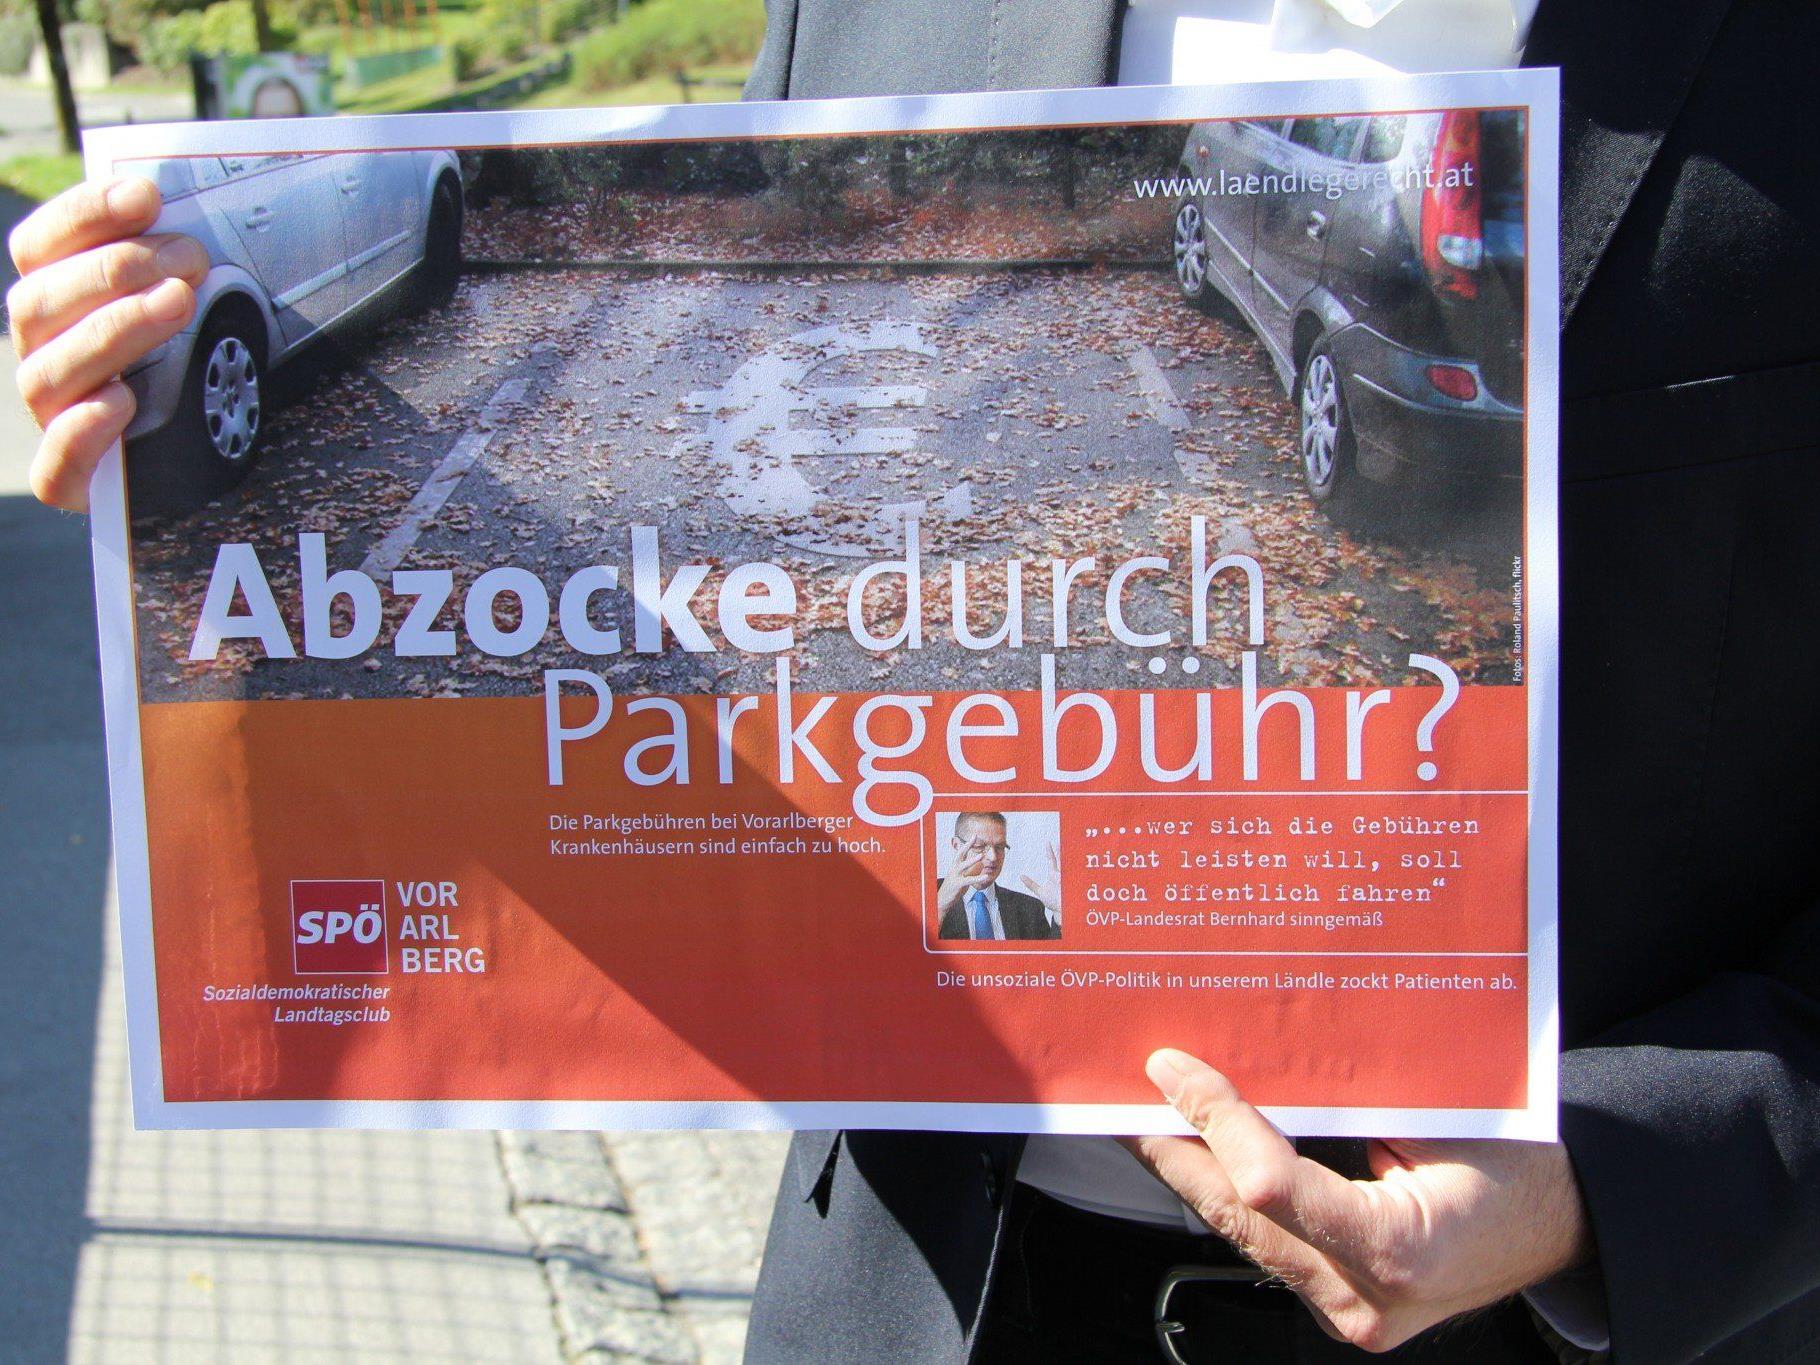 Parkebühren: SPÖ spricht von "Abzocke".